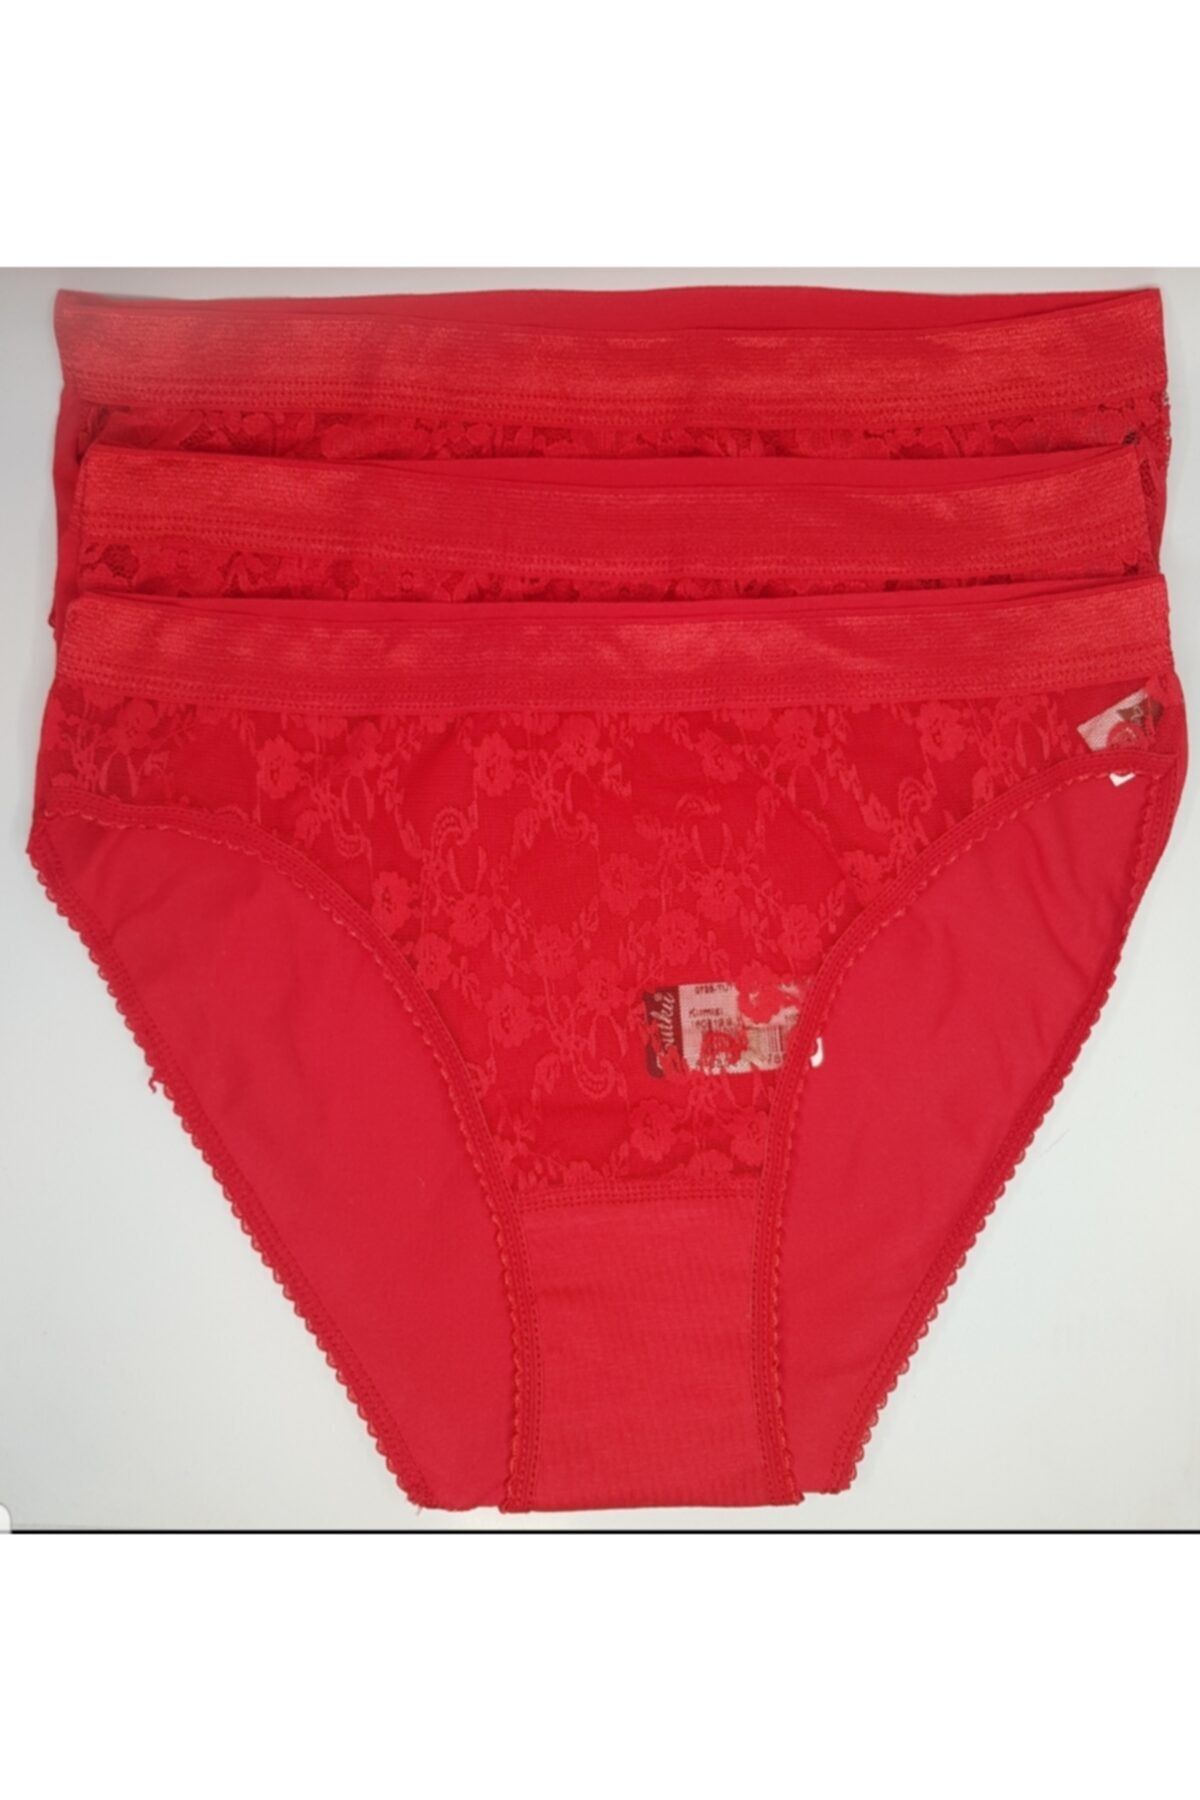 Tutku Kadın Kırmızı Safir Bikini Külot 3'lü Paket